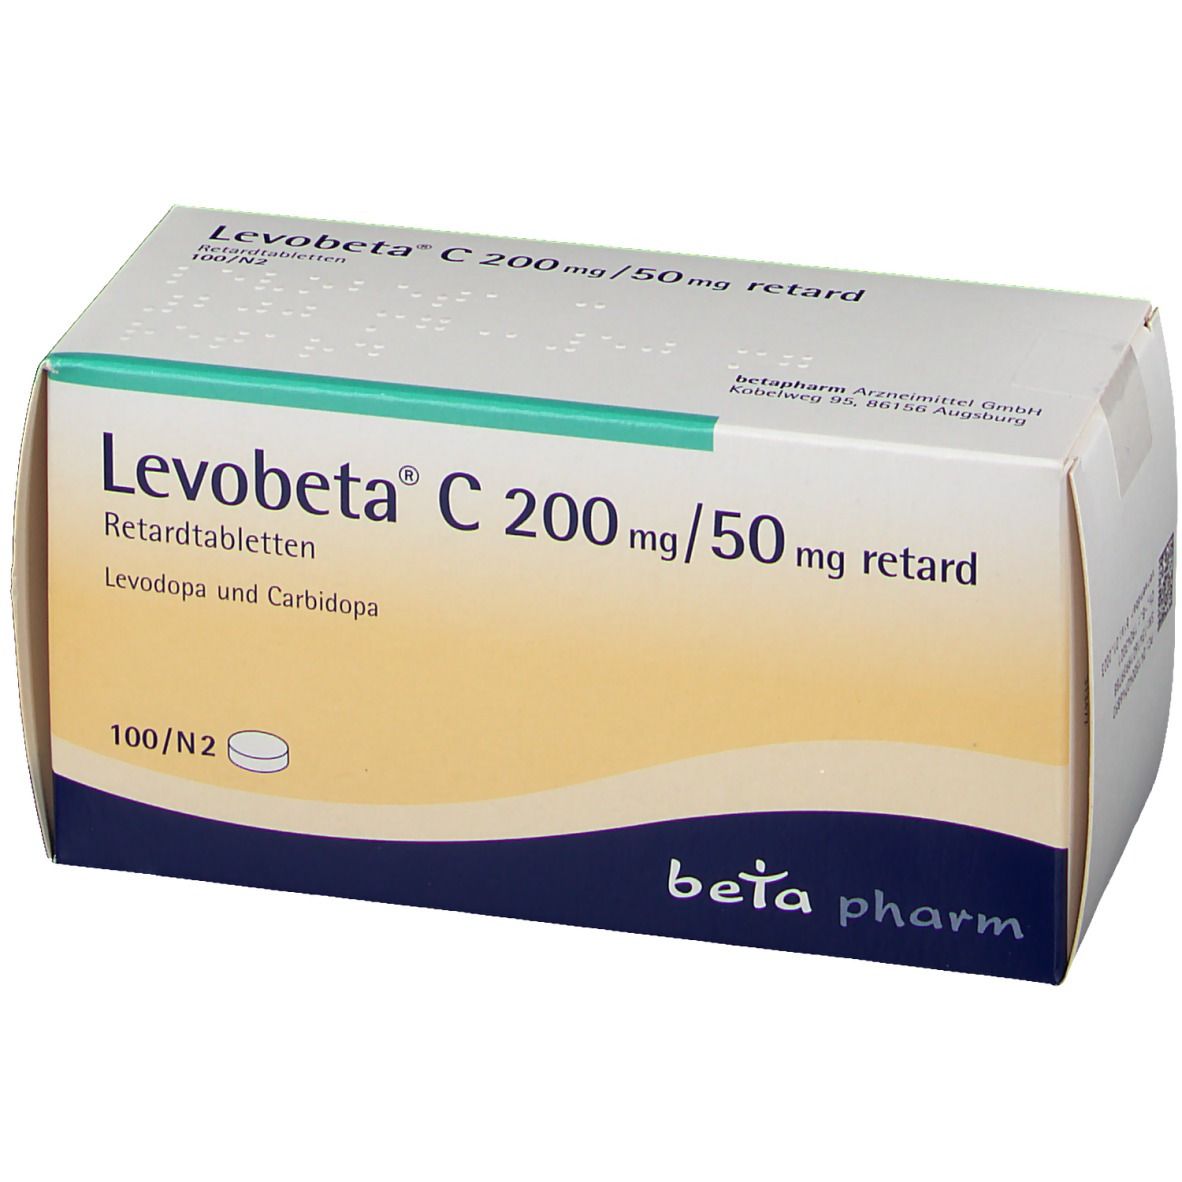 Levobeta® C 200 mg/50 mg retard